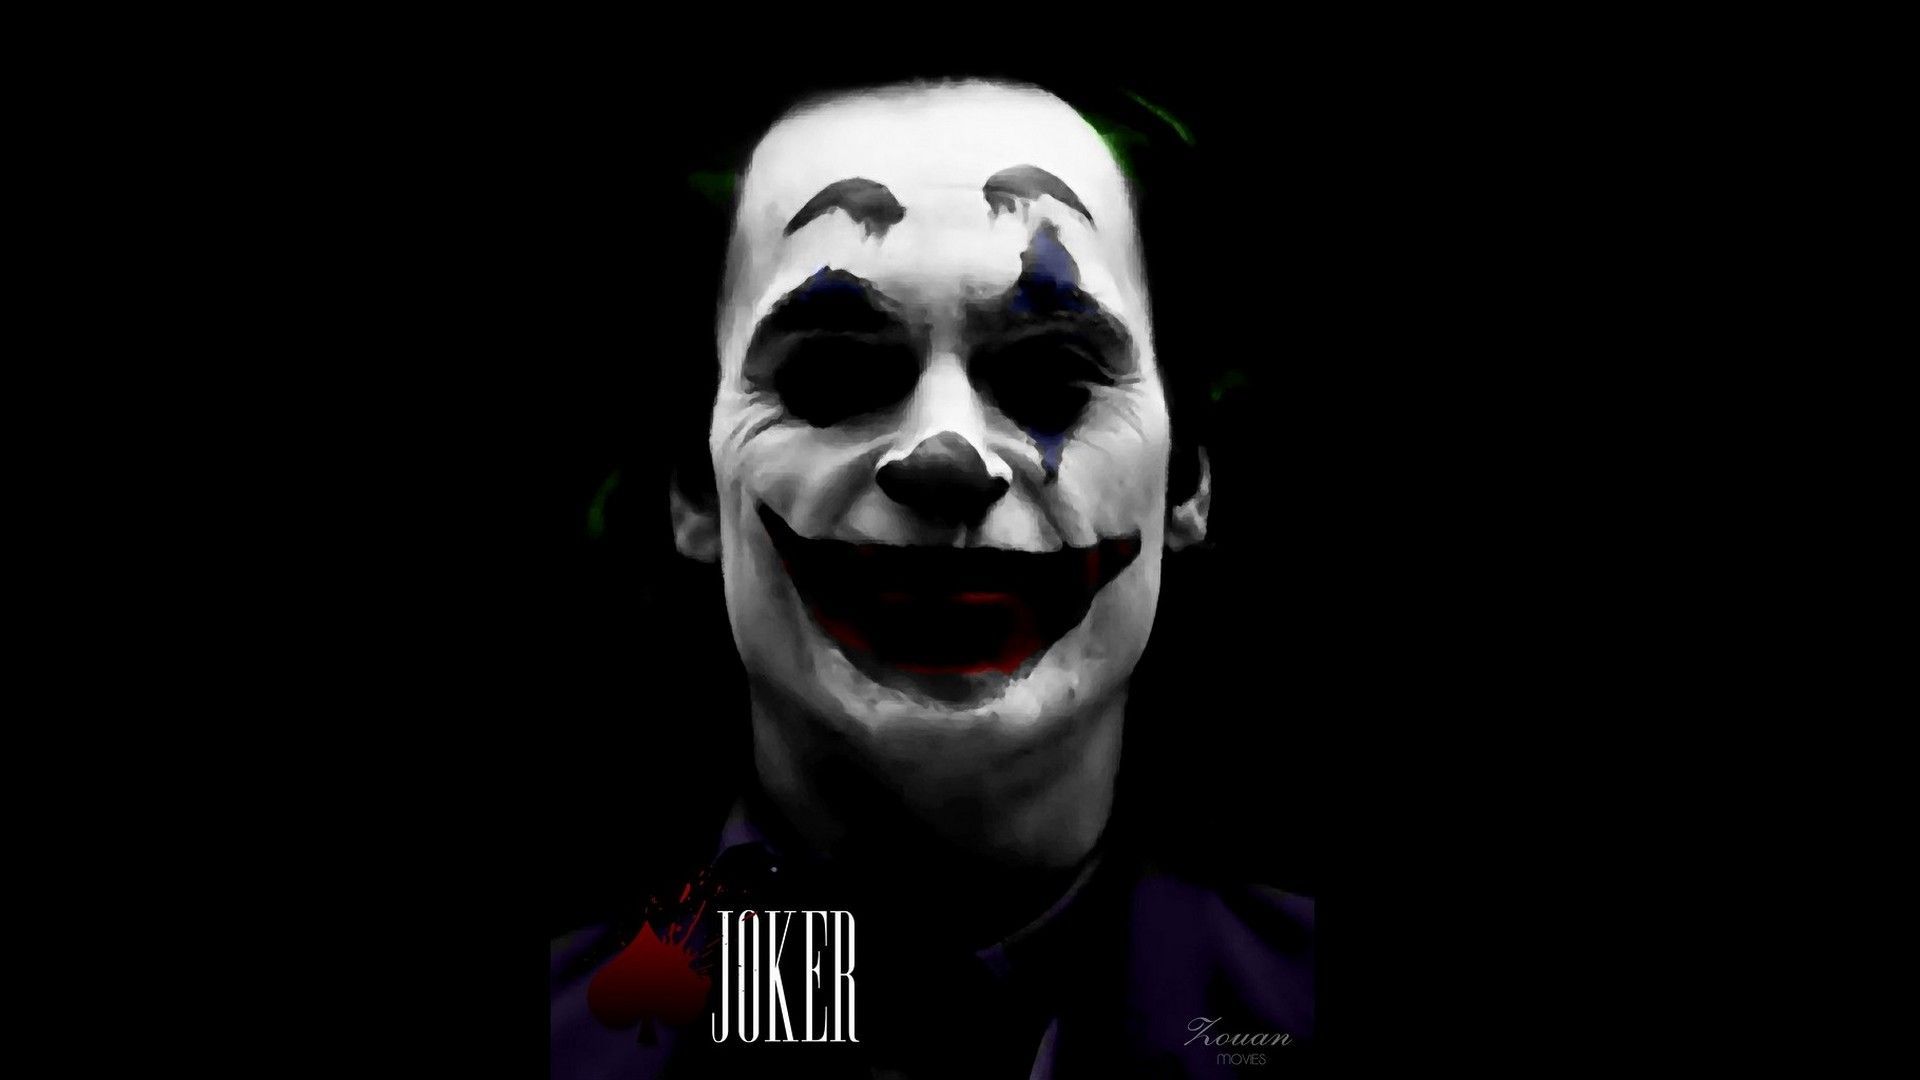 Black Joker 2019 Wallpaper Free Black Joker 2019